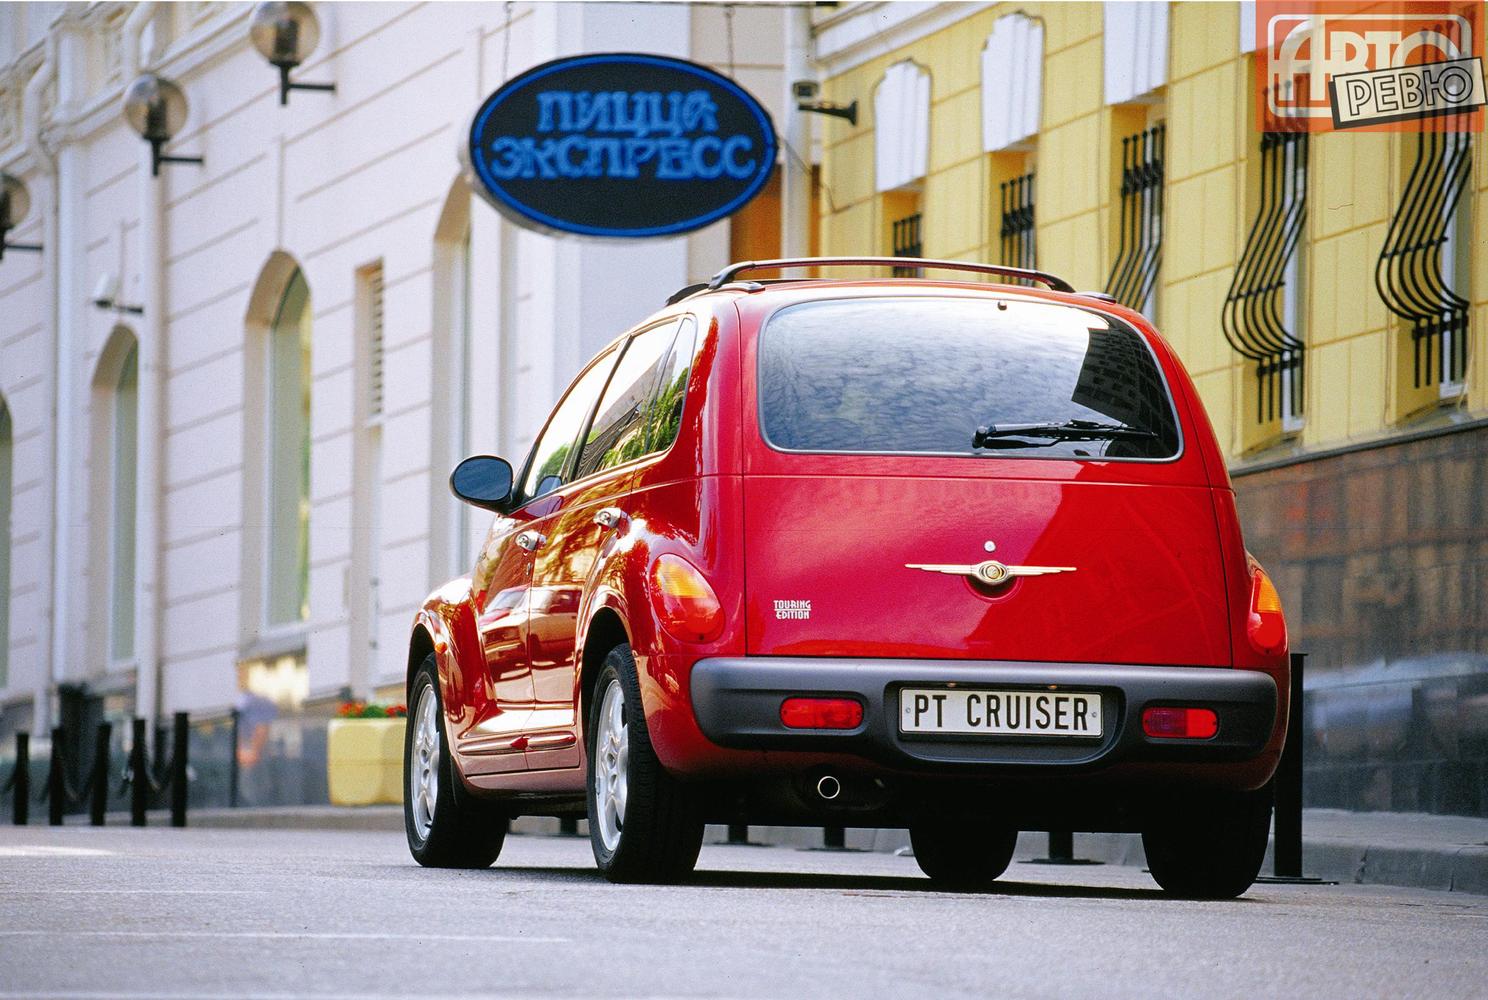 универсал Chrysler PT Cruiser 2000 - 2010г выпуска модификация 1.6 MT (115 л.с.)